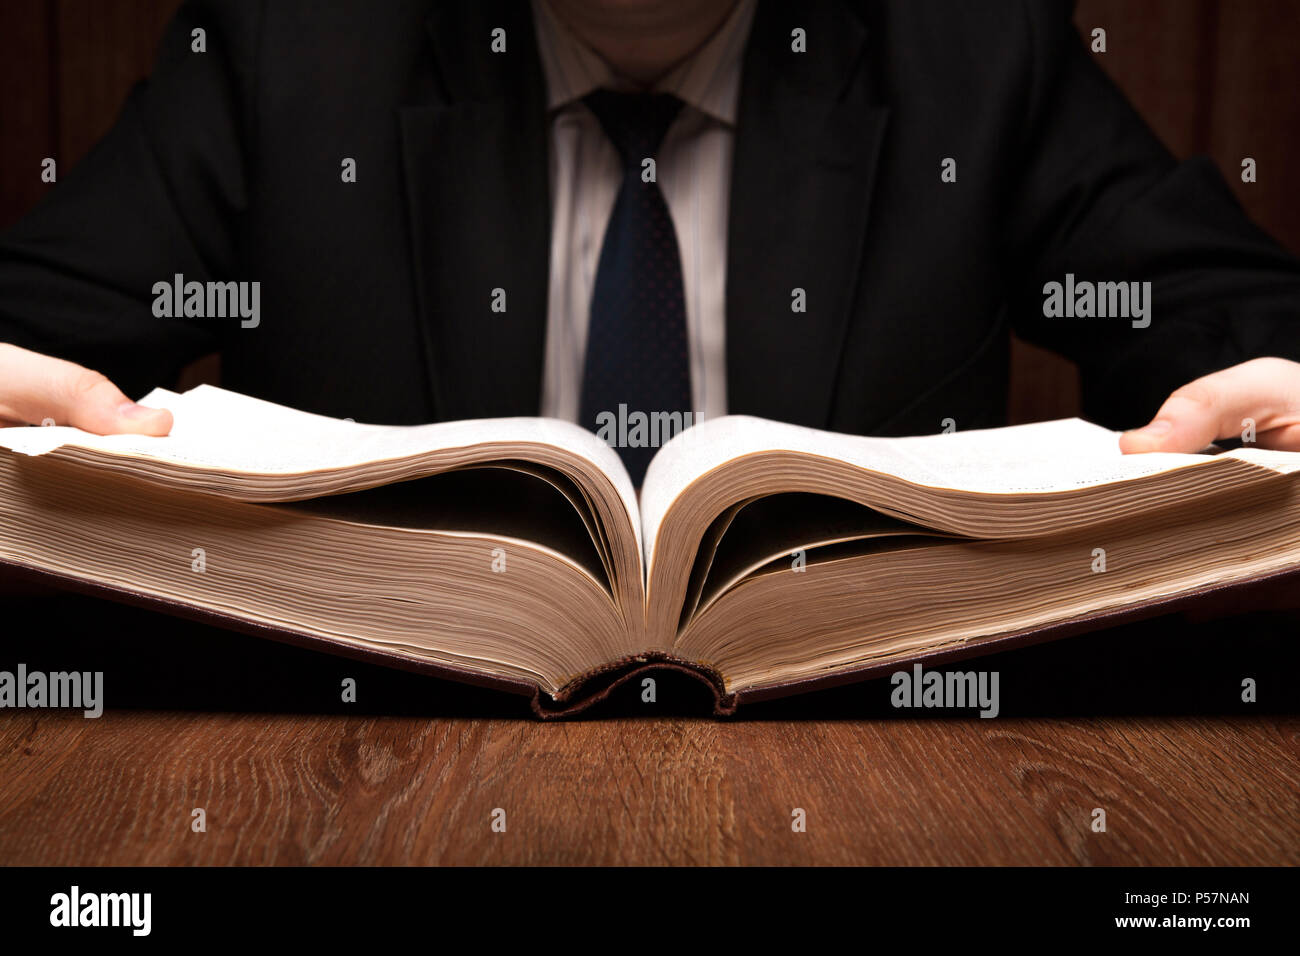 L'homme est à la recherche d'information dans le dictionnaire close up Banque D'Images